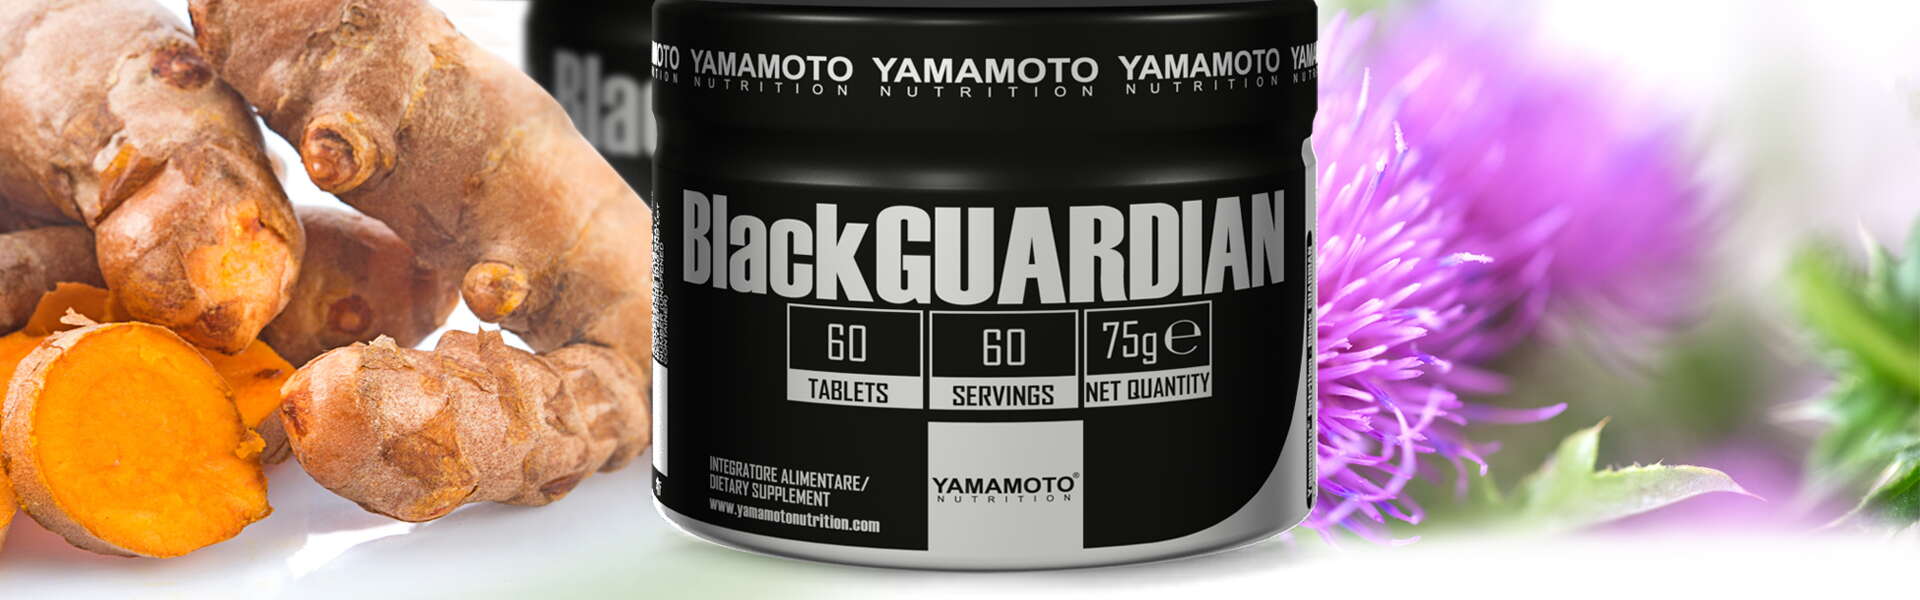 Black Guardian: purifiquémonos. ¡El cuerpo te lo agradecerá!